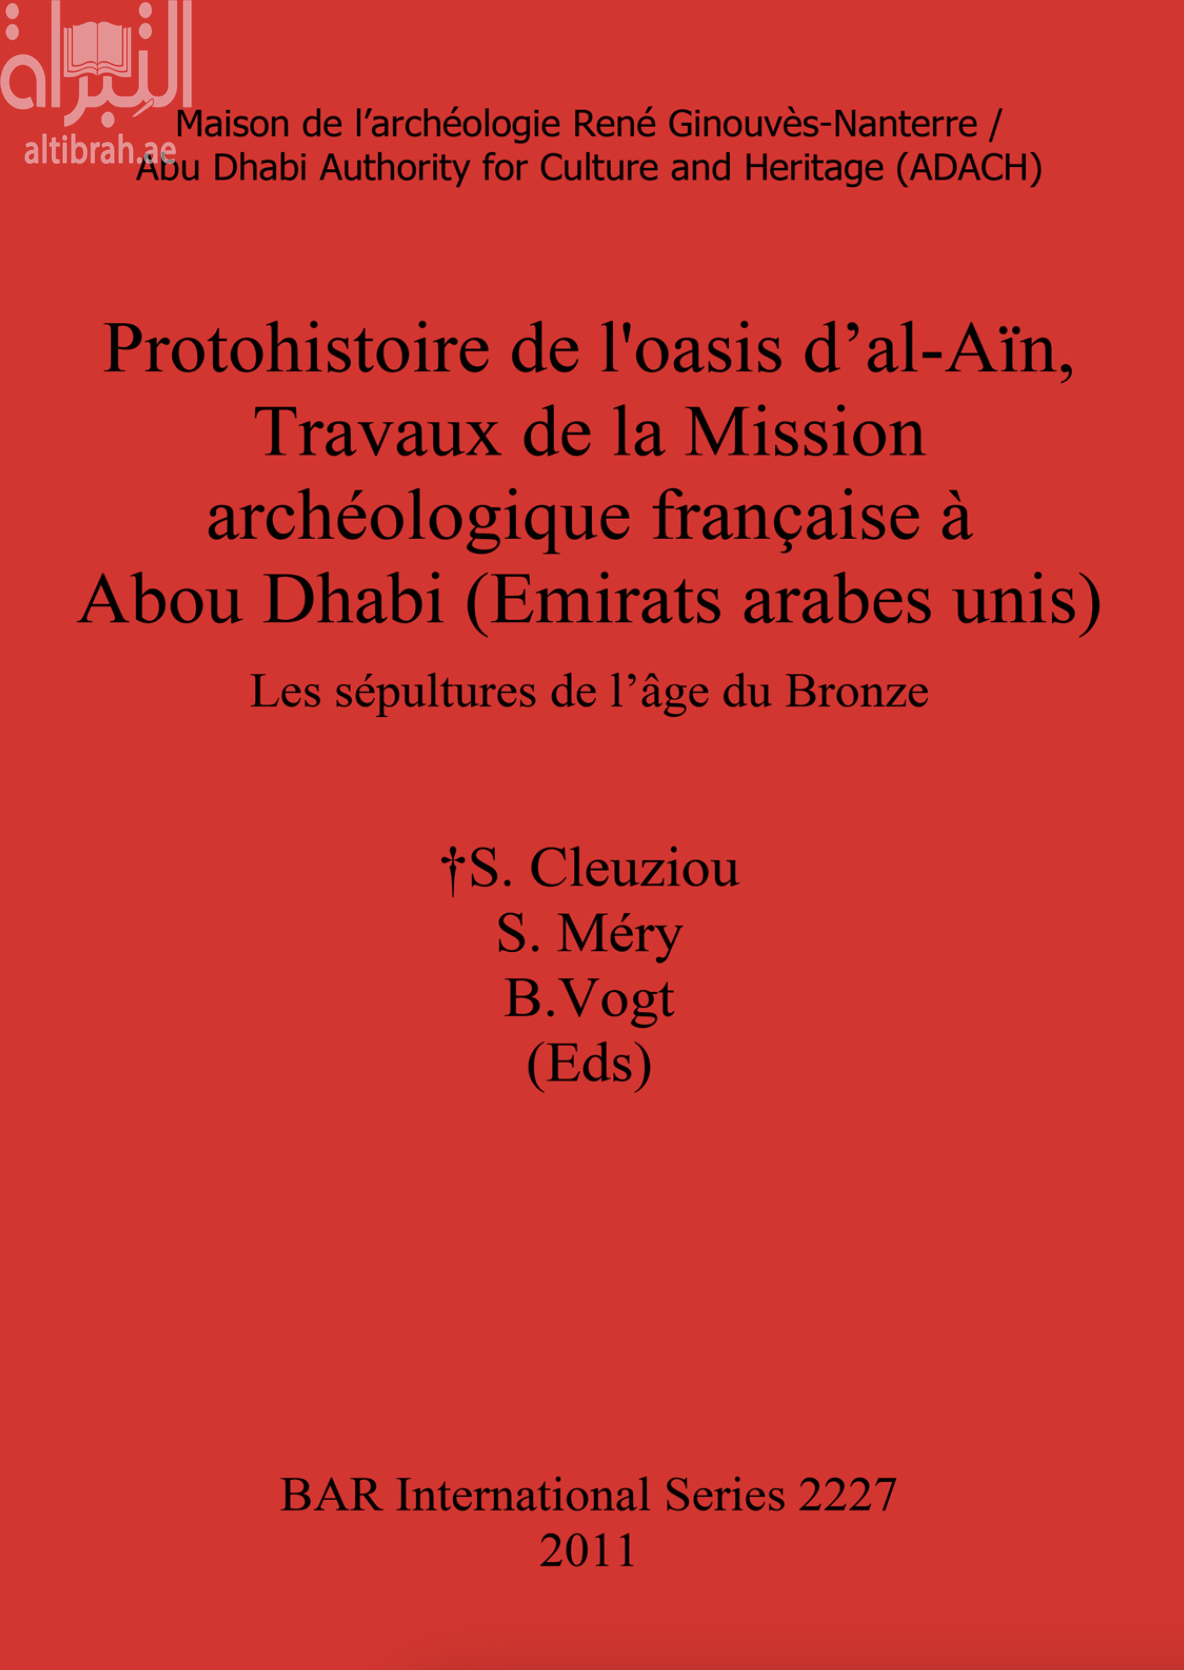 Protohistoire de l'oasis d'al-Aïn, travaux de la mission archéologique française à Abou Dhabi (Emirats arabes unis) : les sépultures de l'âge du Bronze